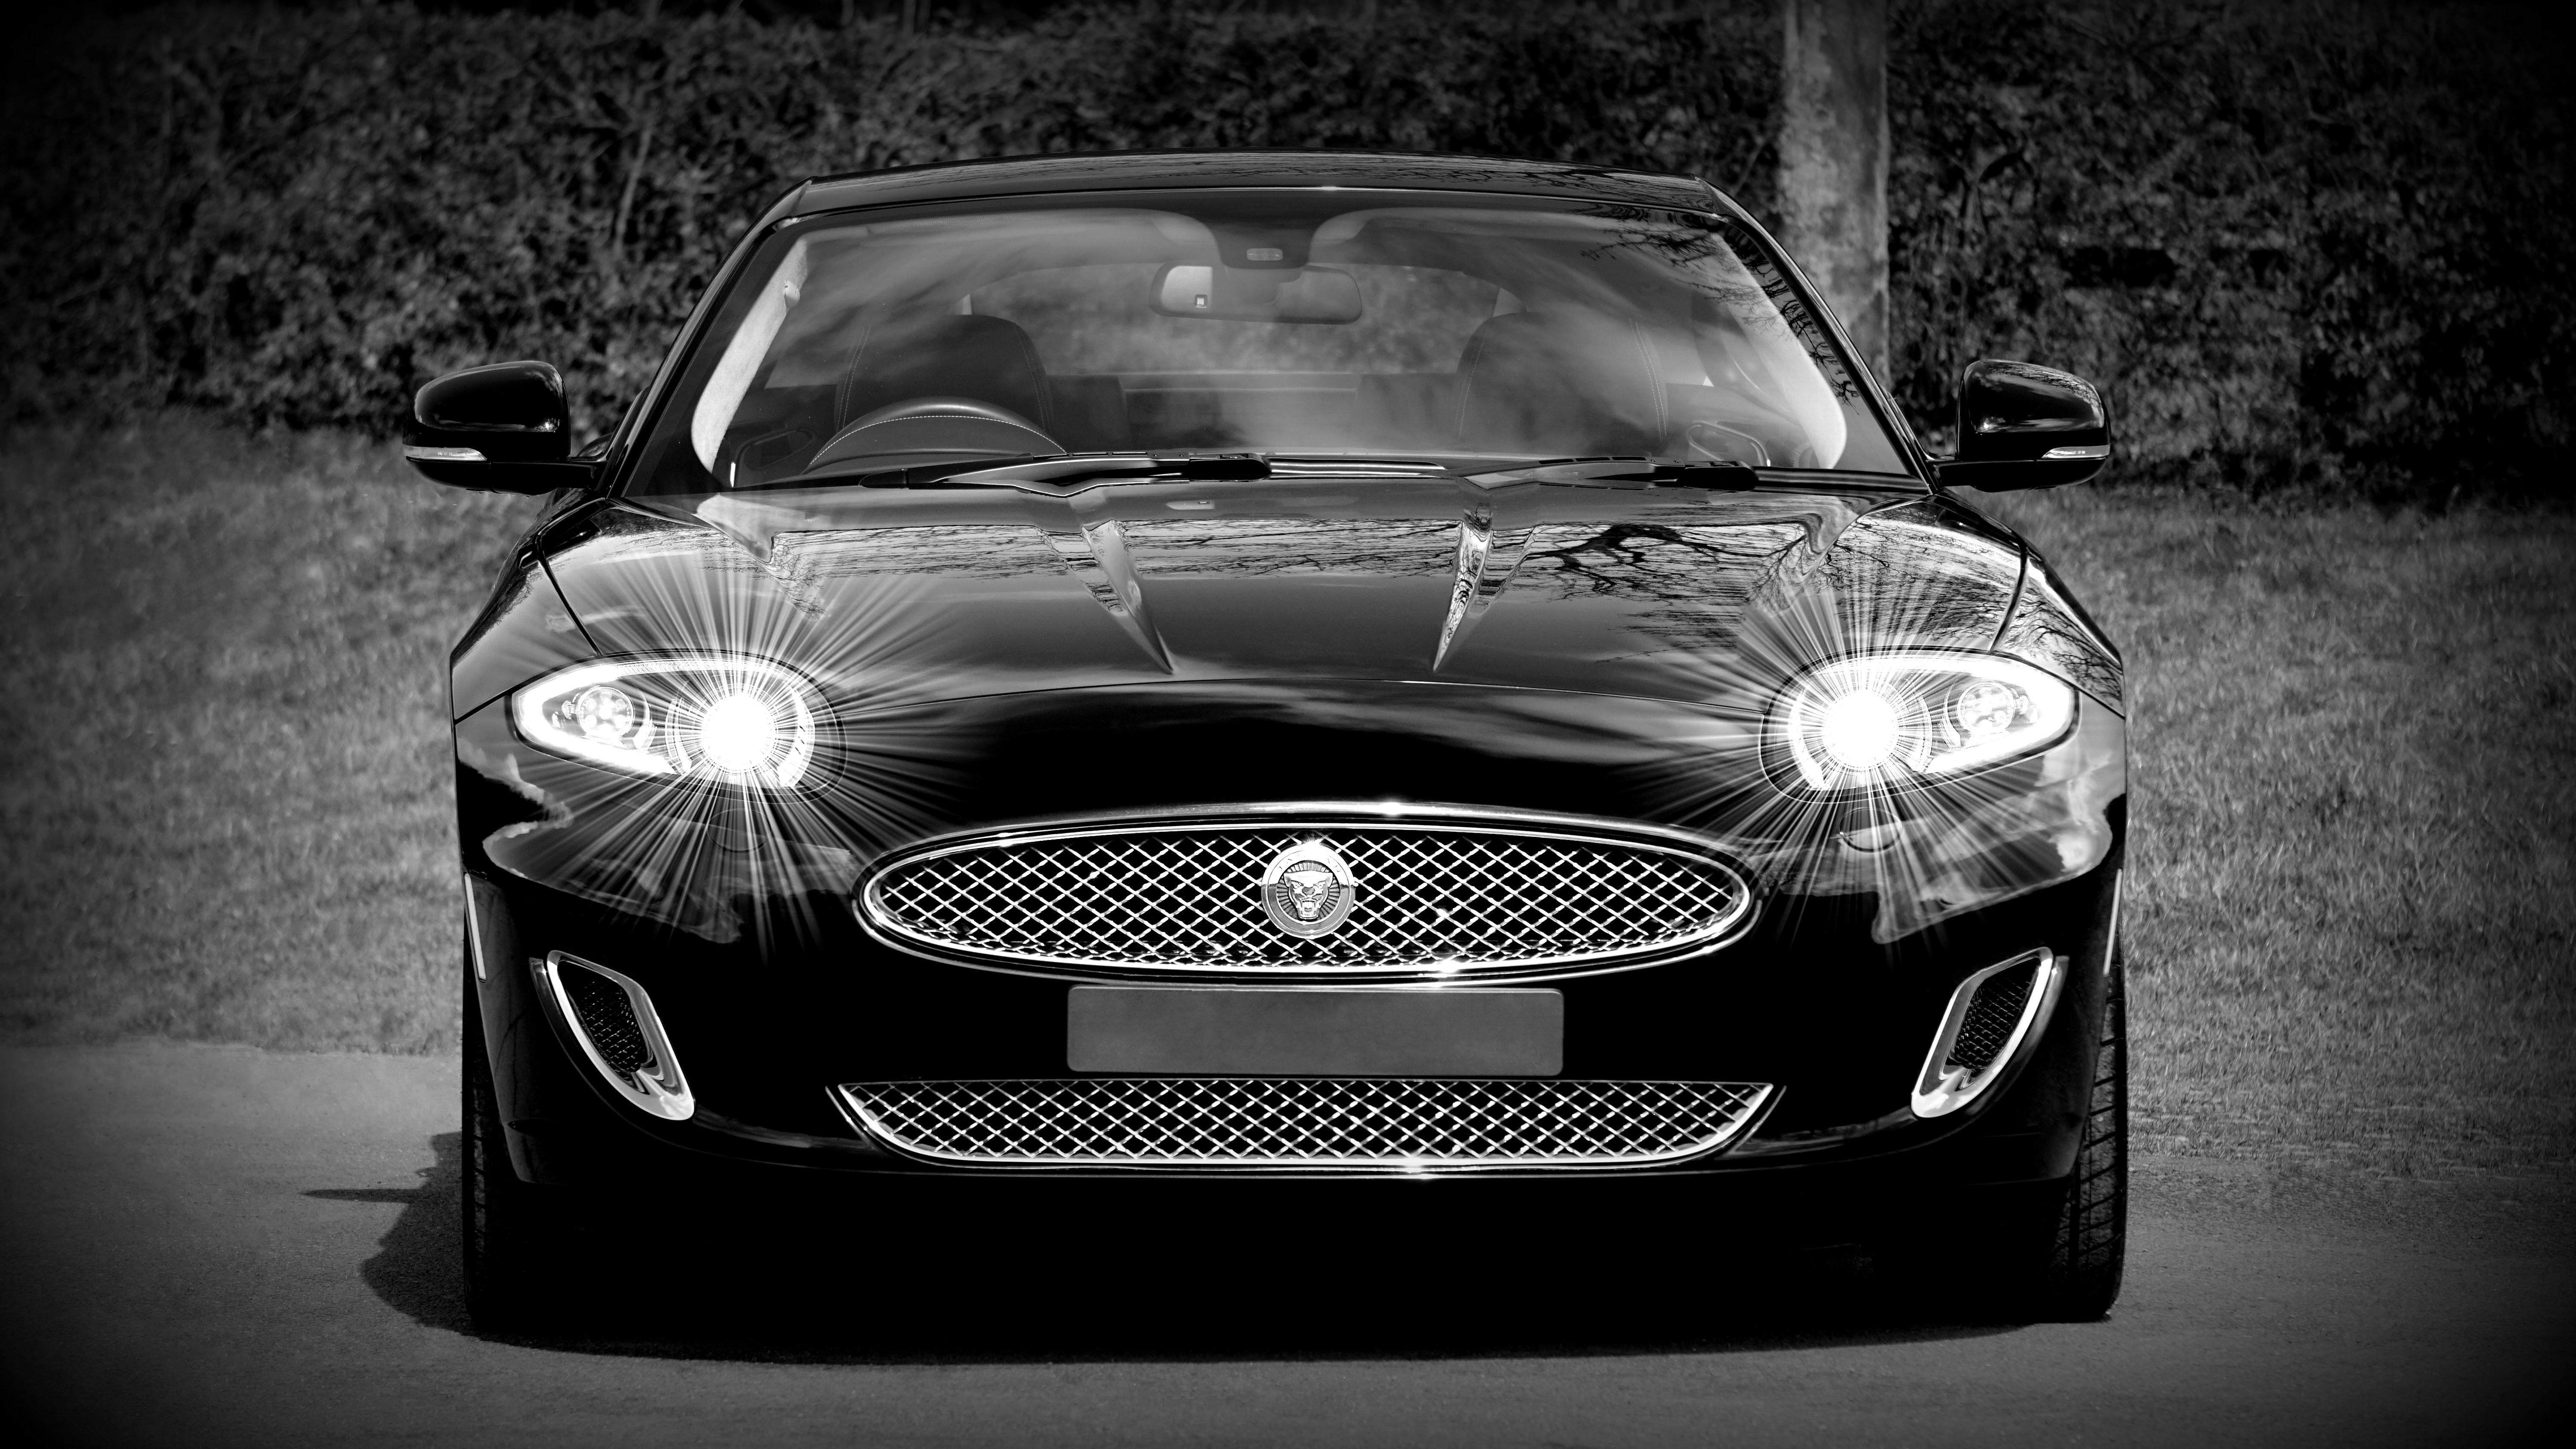 Jaguar Car Photos Download The BEST Free Jaguar Car Stock Photos  HD  Images